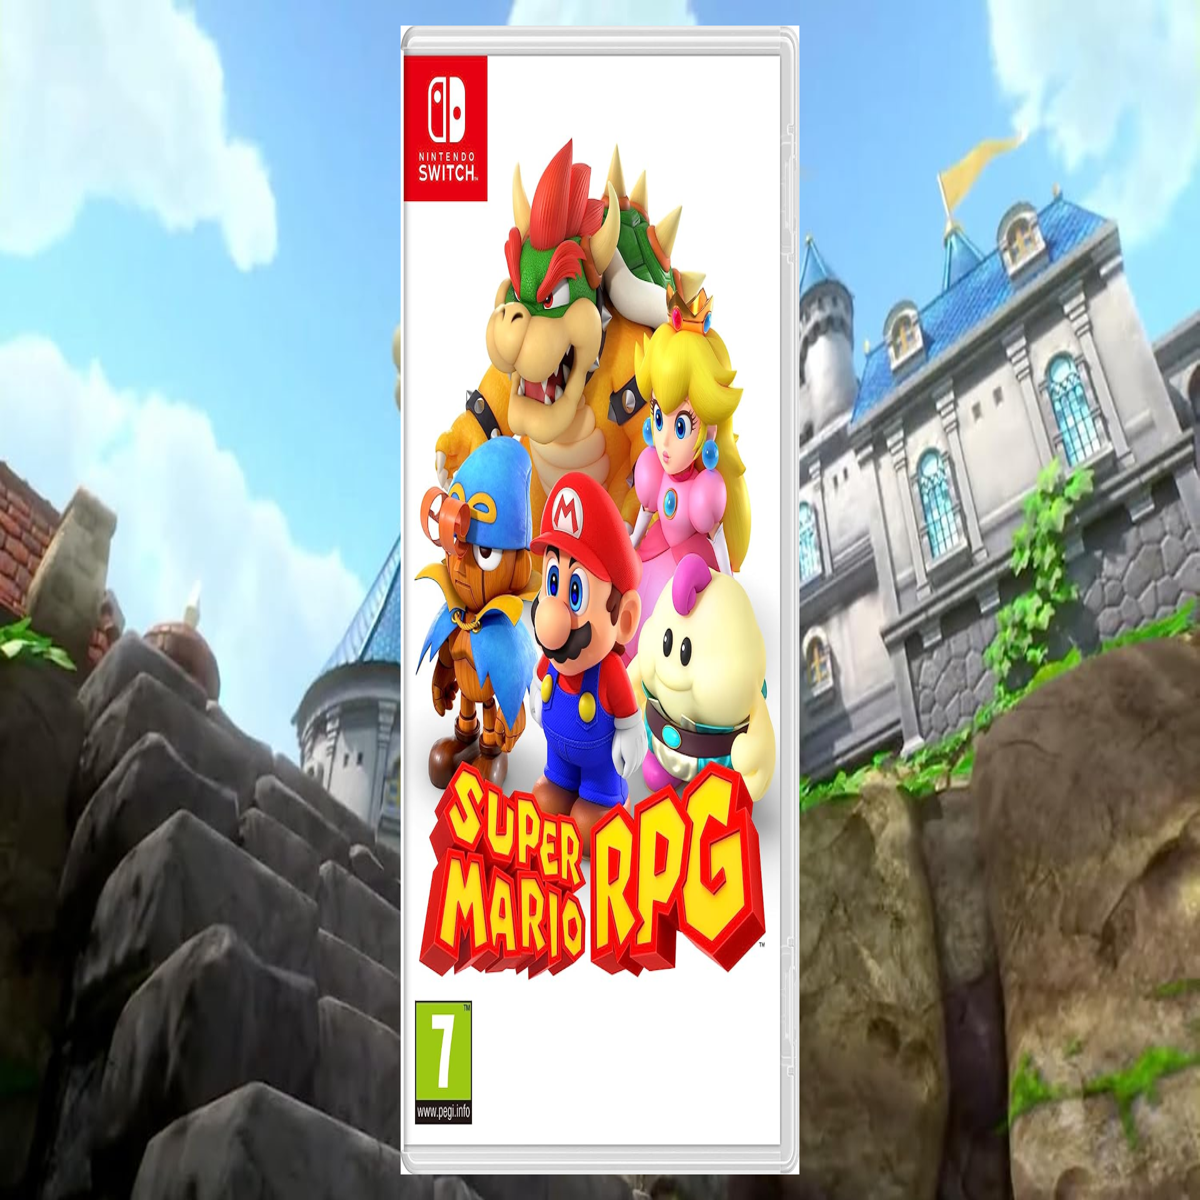 Nintendo Switch Super Mario RPG